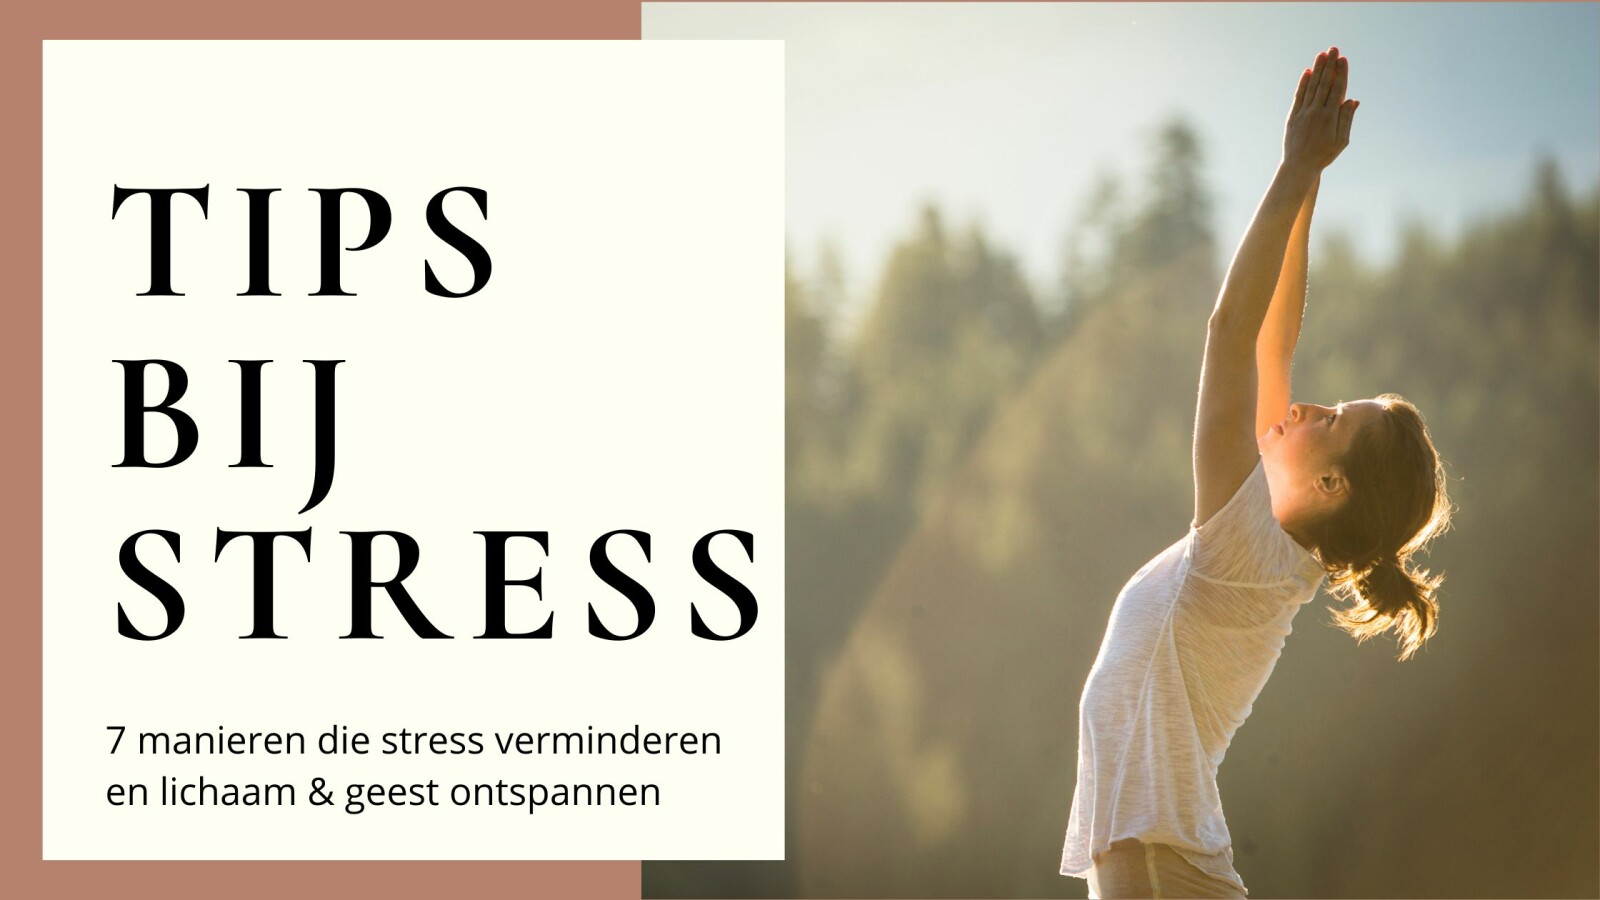 TIPS BIJ STRESS: 7 MANIEREN DIE STRESS VERMINDEREN EN ONTSPANNEN